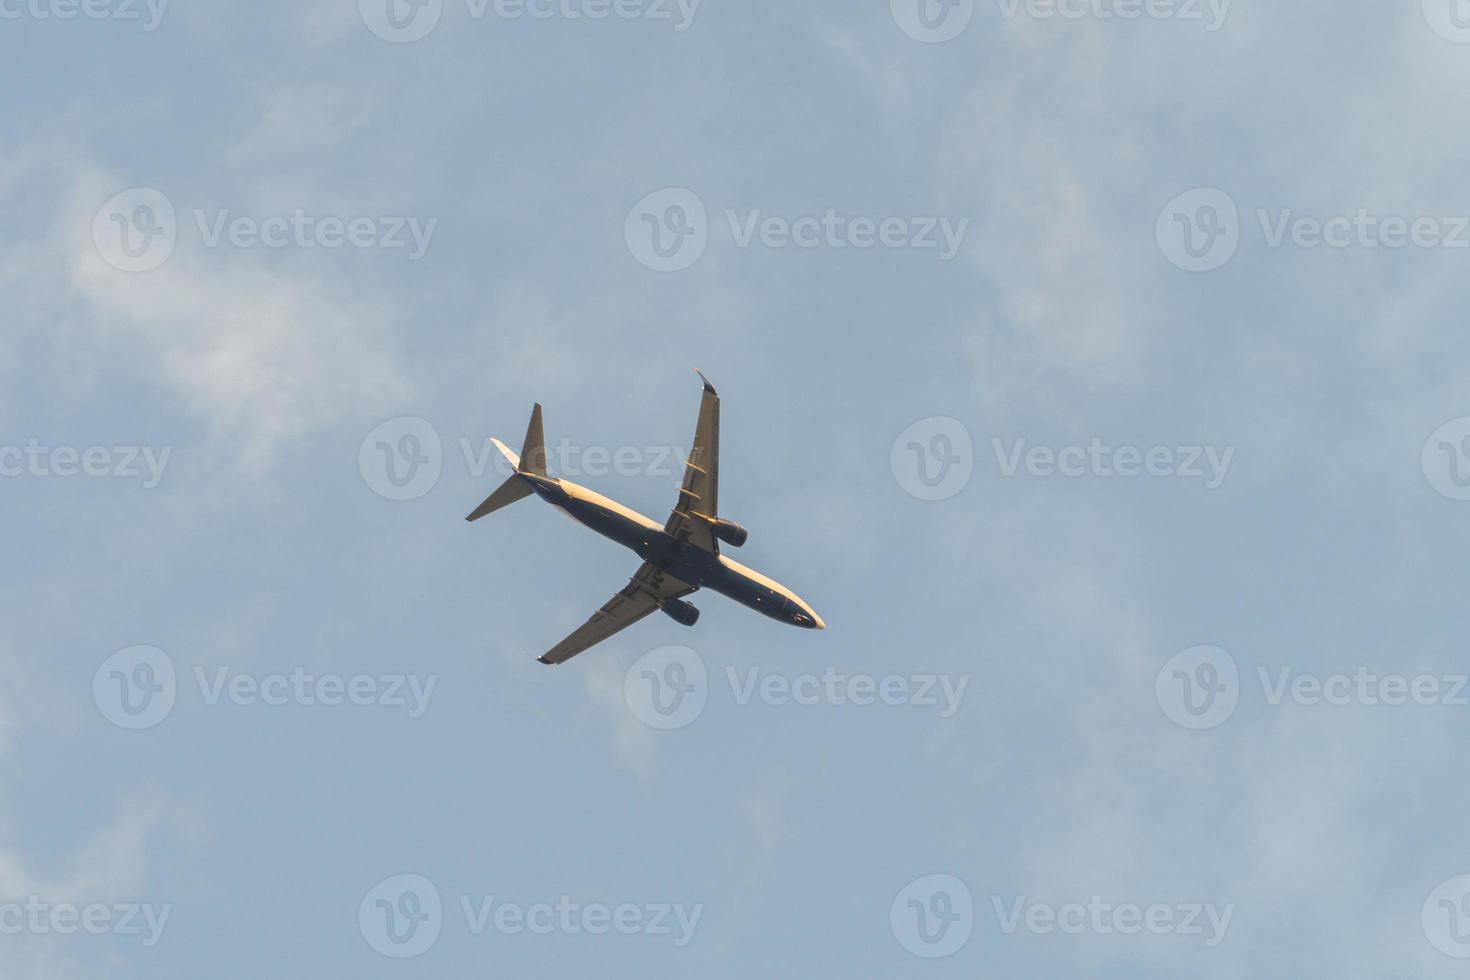 Bild des blauen Himmels und des Flugzeugs foto